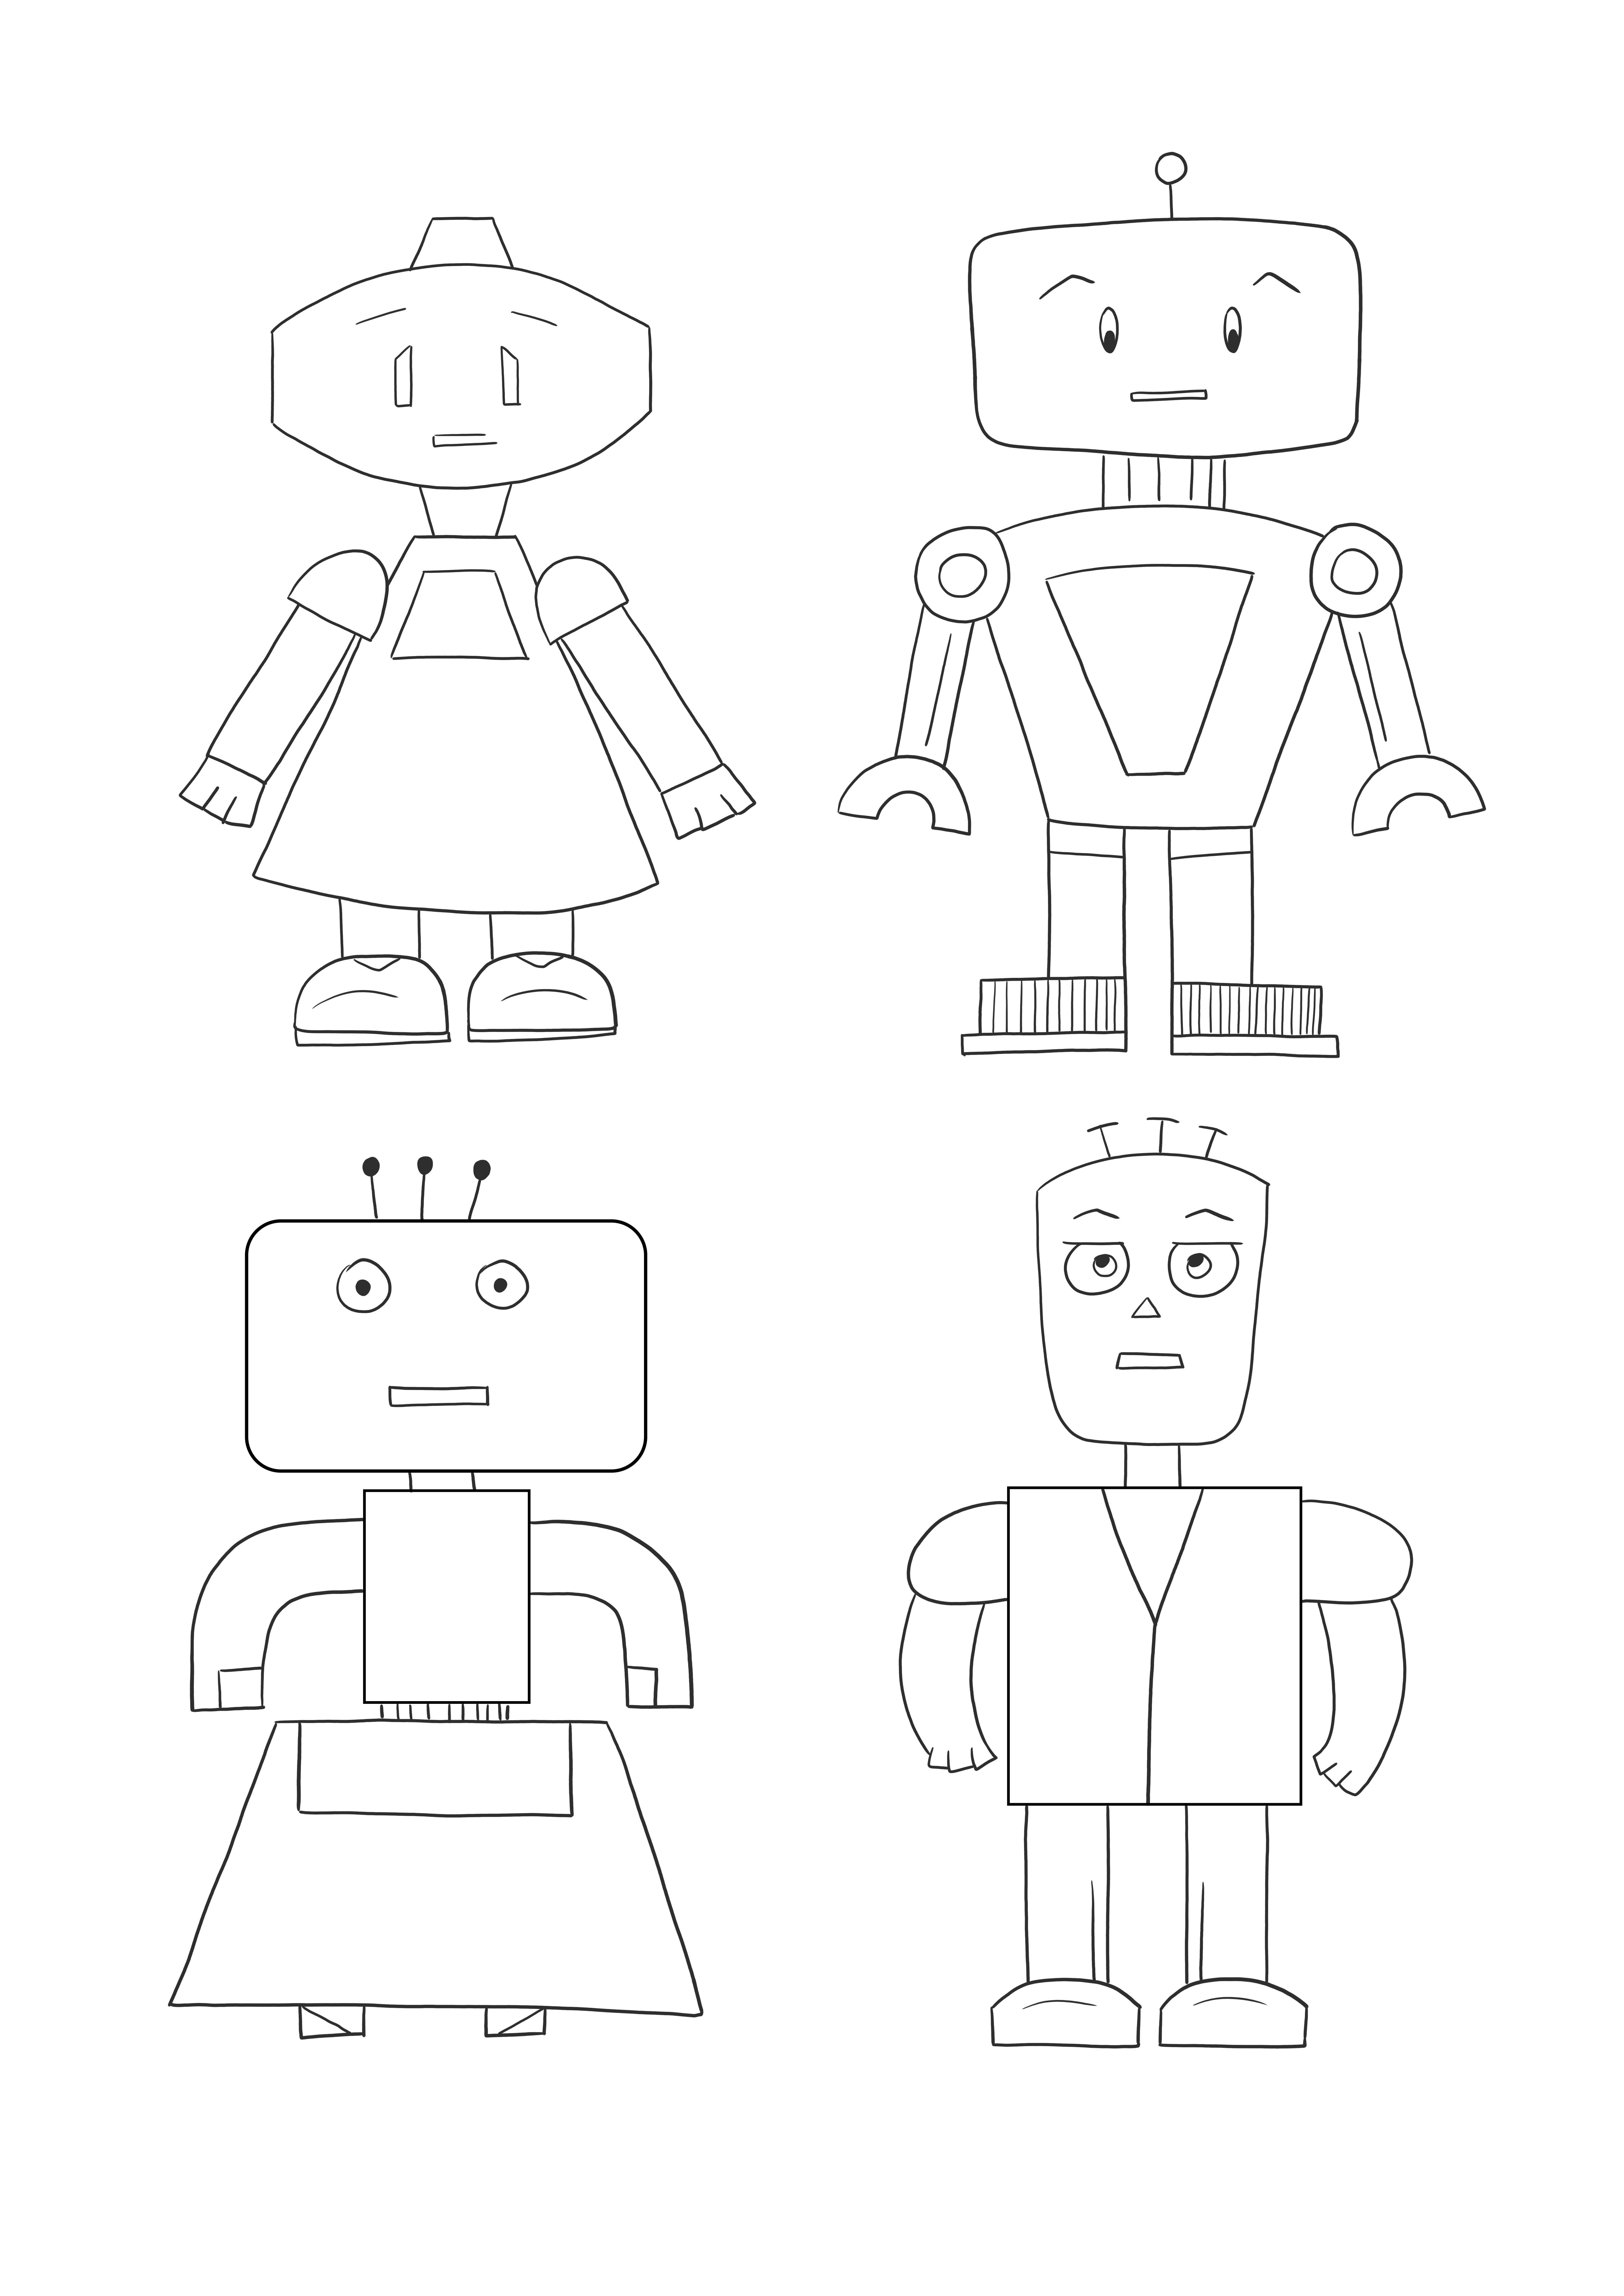 Impression et coloriage gratuits de feuille de robots mignons pour les enfants